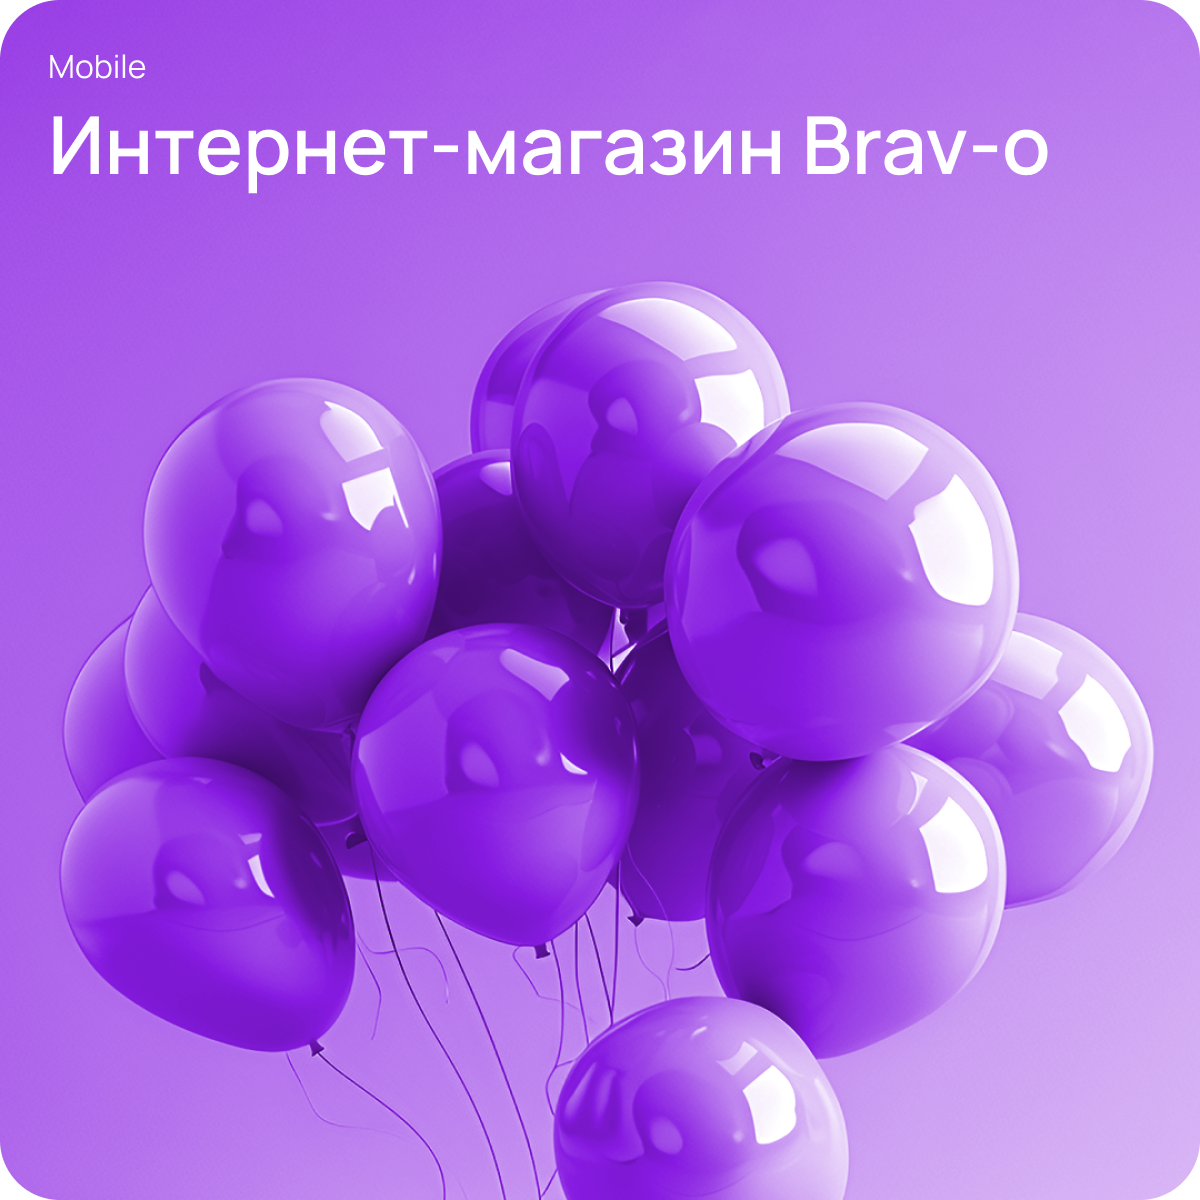 Мобильное приложение для интернет-магазина Brav-o